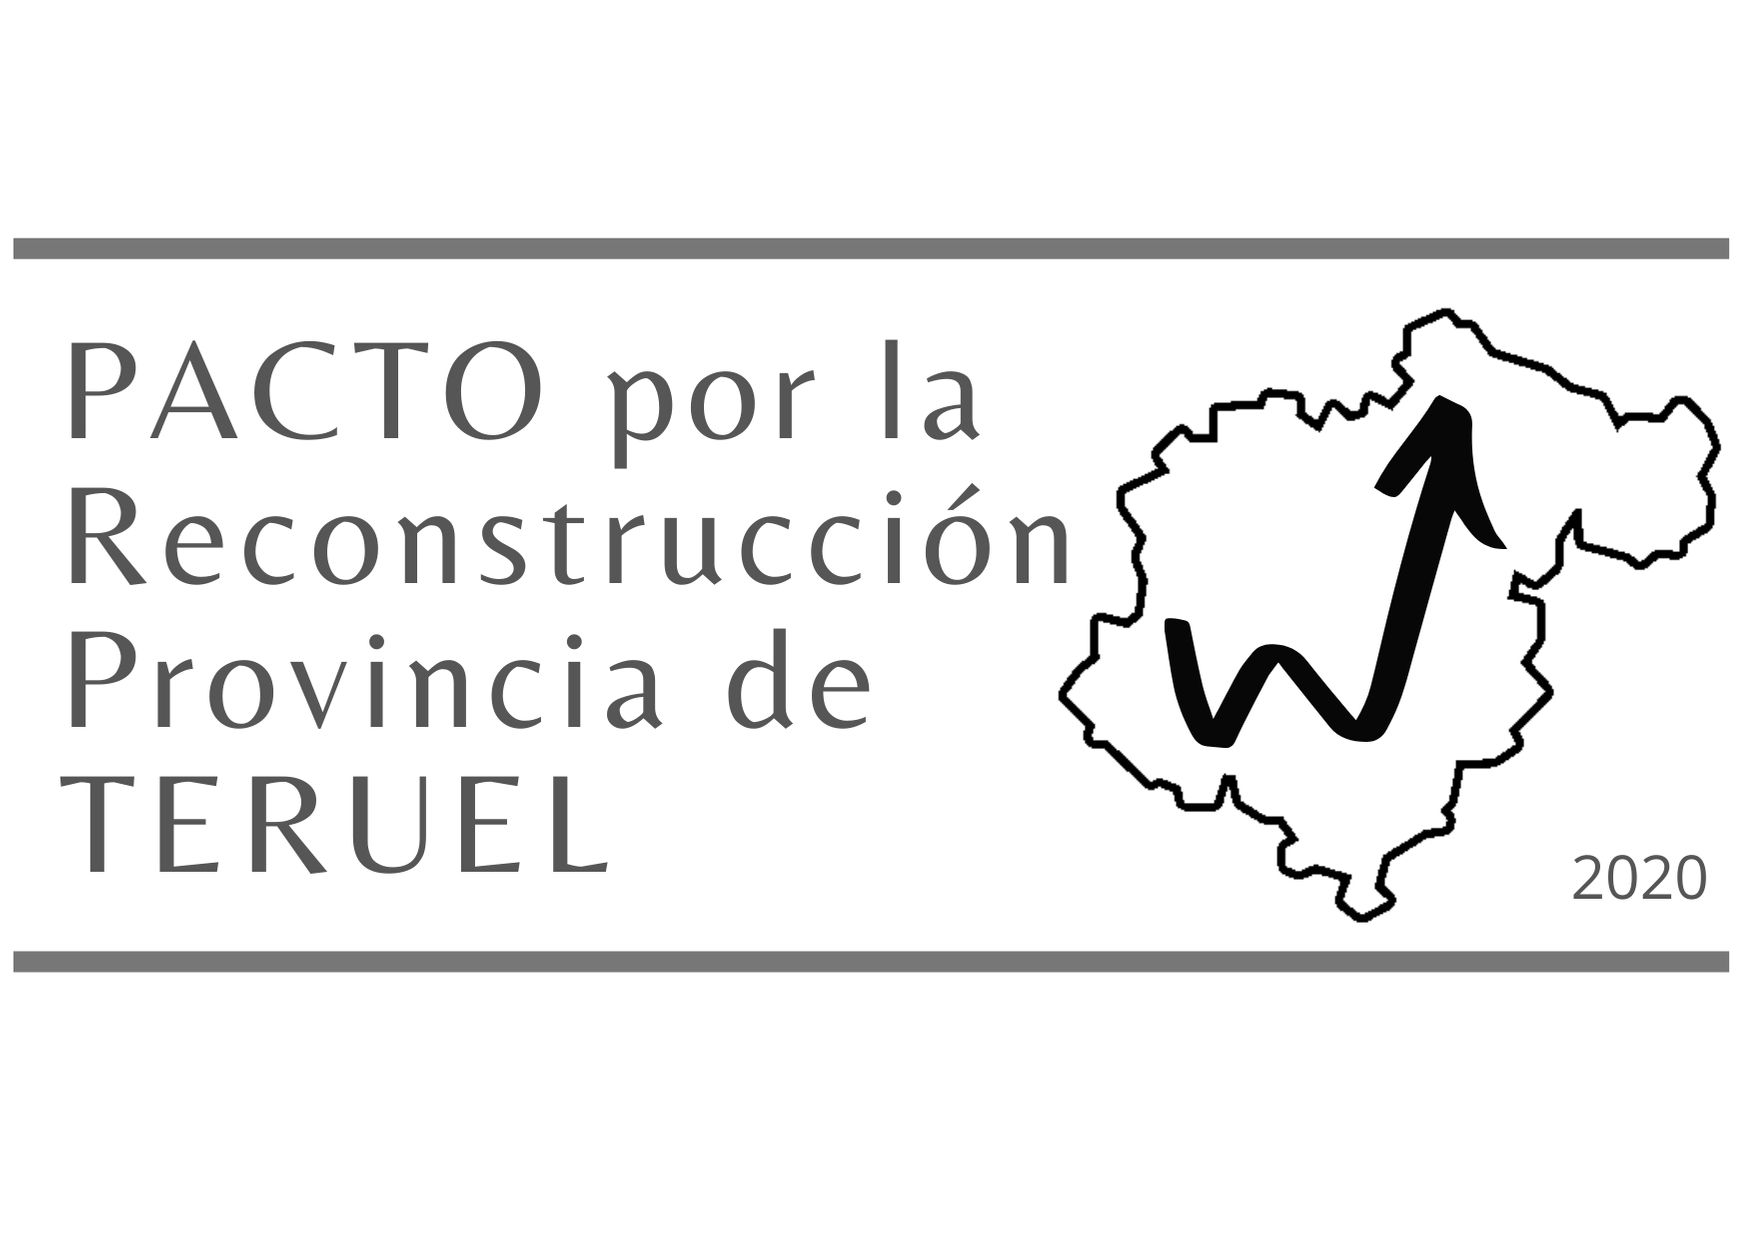 Invitación a participar en el Pacto por la reconstrucción de la provincia de Teruel